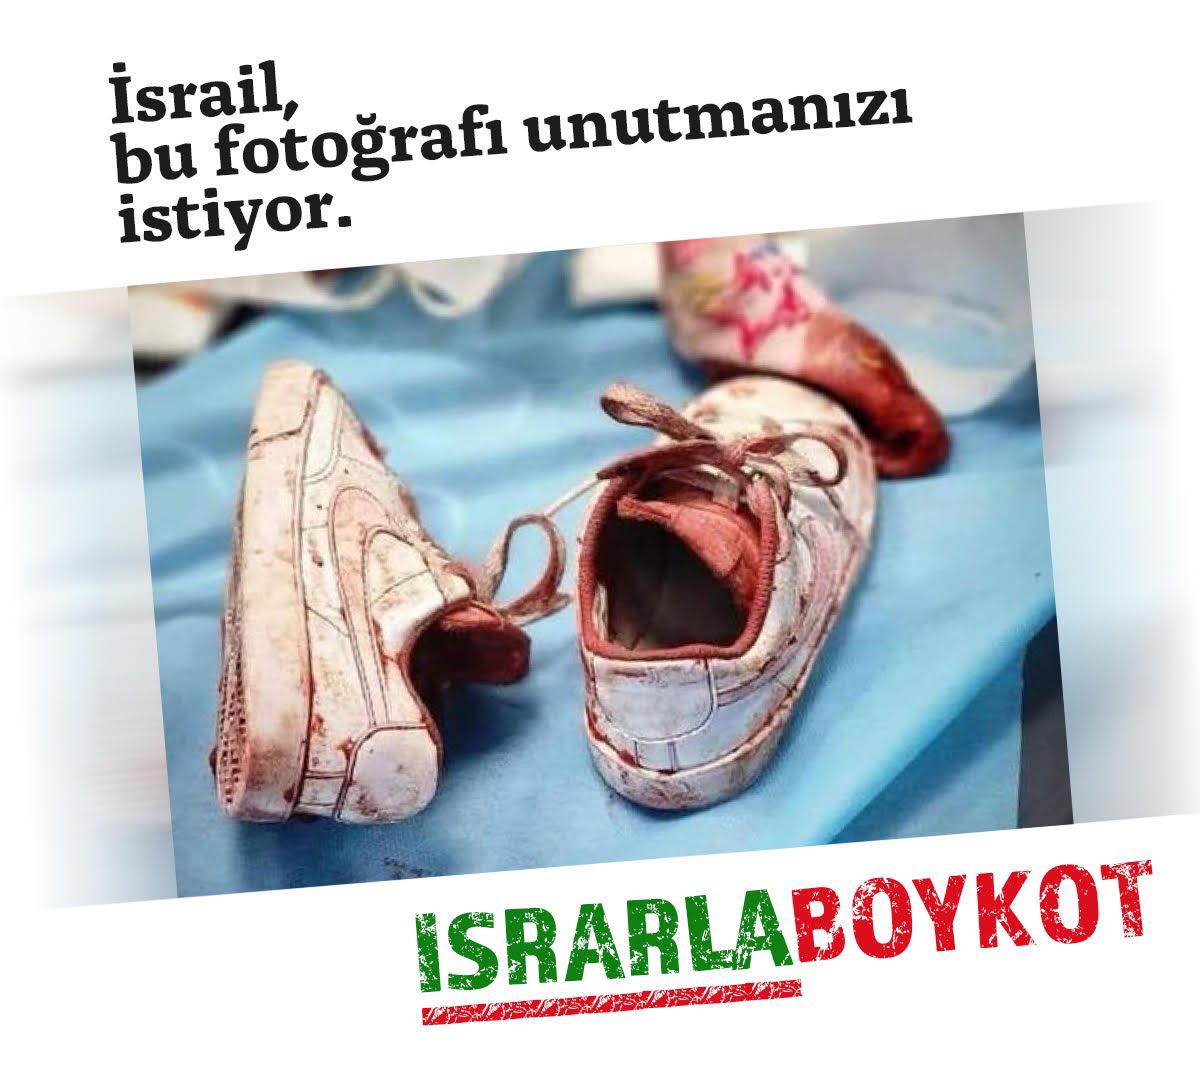 Bu fotoğrafı unutmayacağız. #IsrarlaBoykot